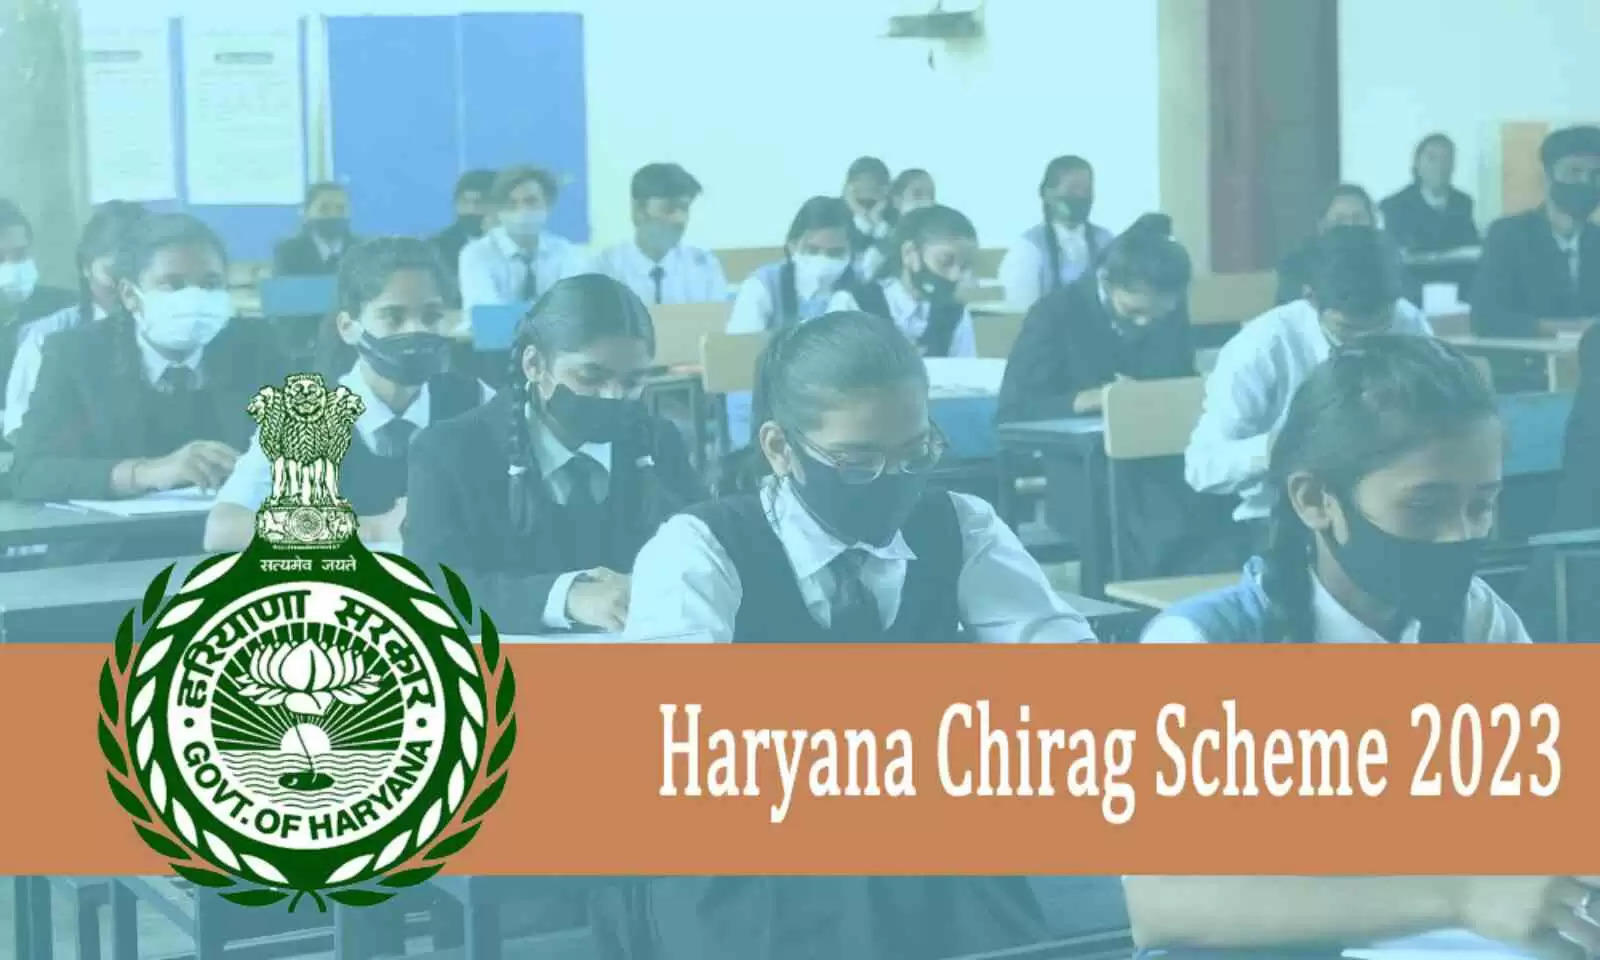 Haryana Chirag Yojana 2023: हरियाणा चिराग स्कीम के तहत अब प्राइवेट स्कूलों में फ्री में पढ़ेंगे आपके बच्चे, आवेदन के लिए देखिए सारी डिटेल्स के साथ पूरा नोटिफिकेशन